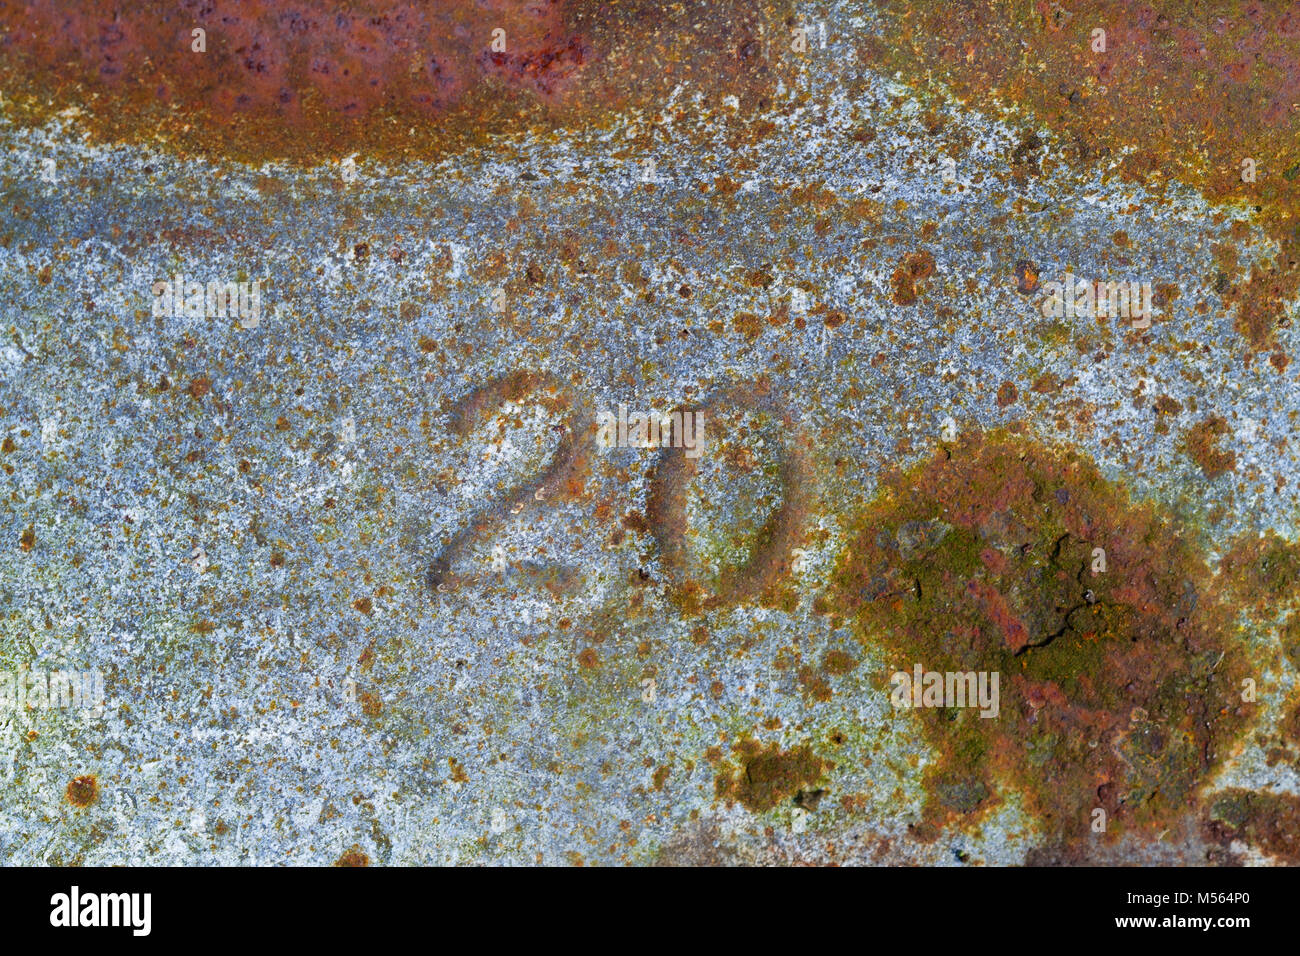 El número '20' presiona en corroída, oxidada de hierro galvanizado Foto de stock